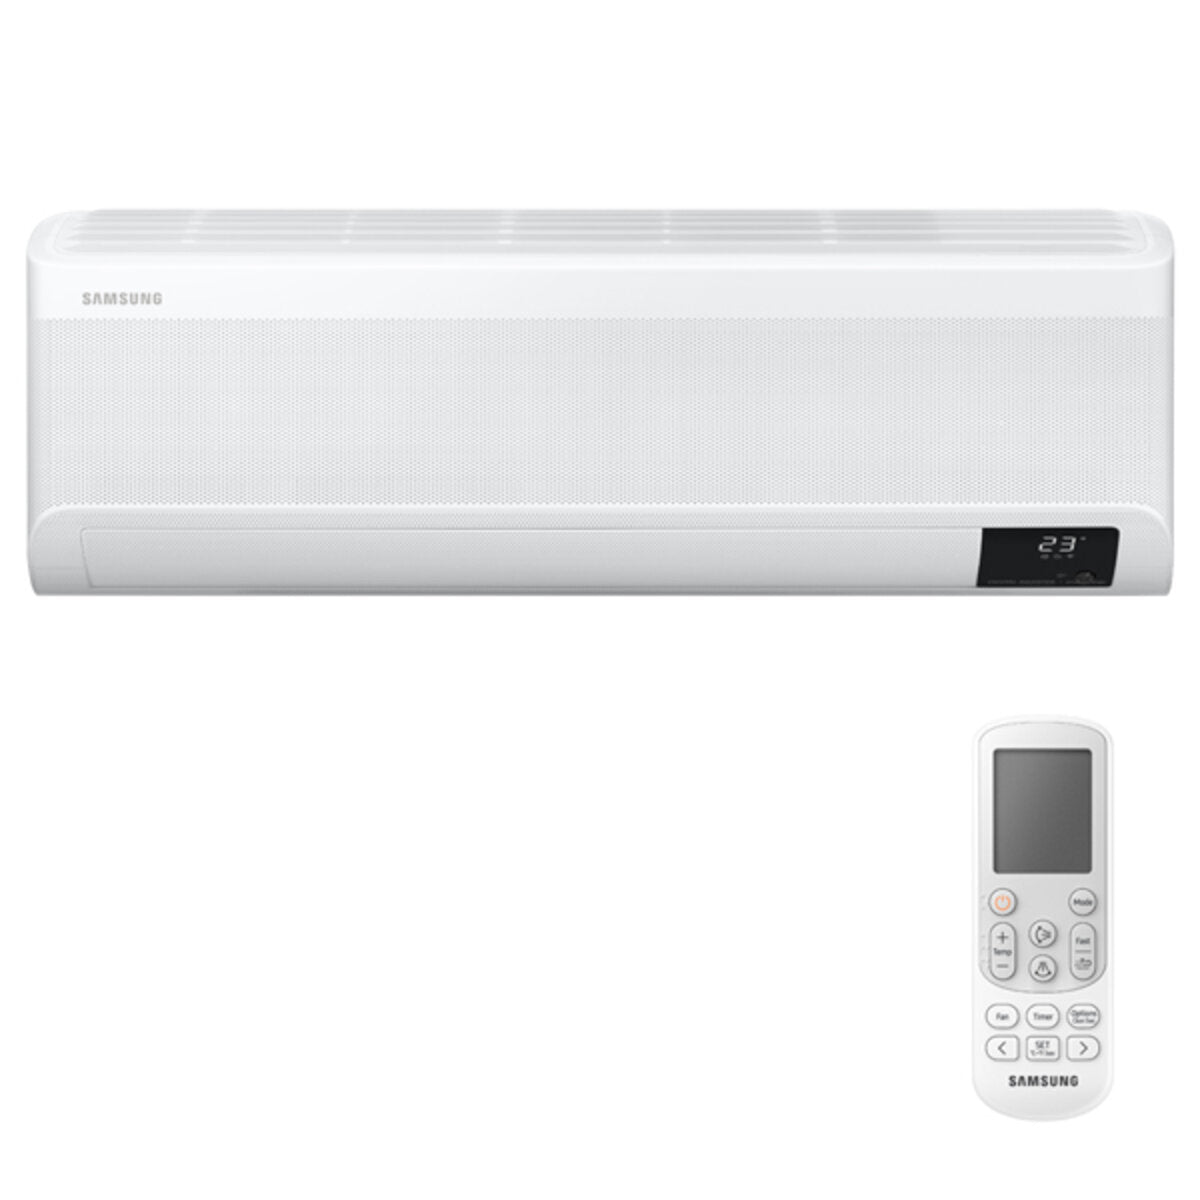 Samsung WindFree AVANT Trial Split Klimaanlage 18000 + 18000 + 18000 BTU Inverter A++ WLAN Außengerät 10,0 kW